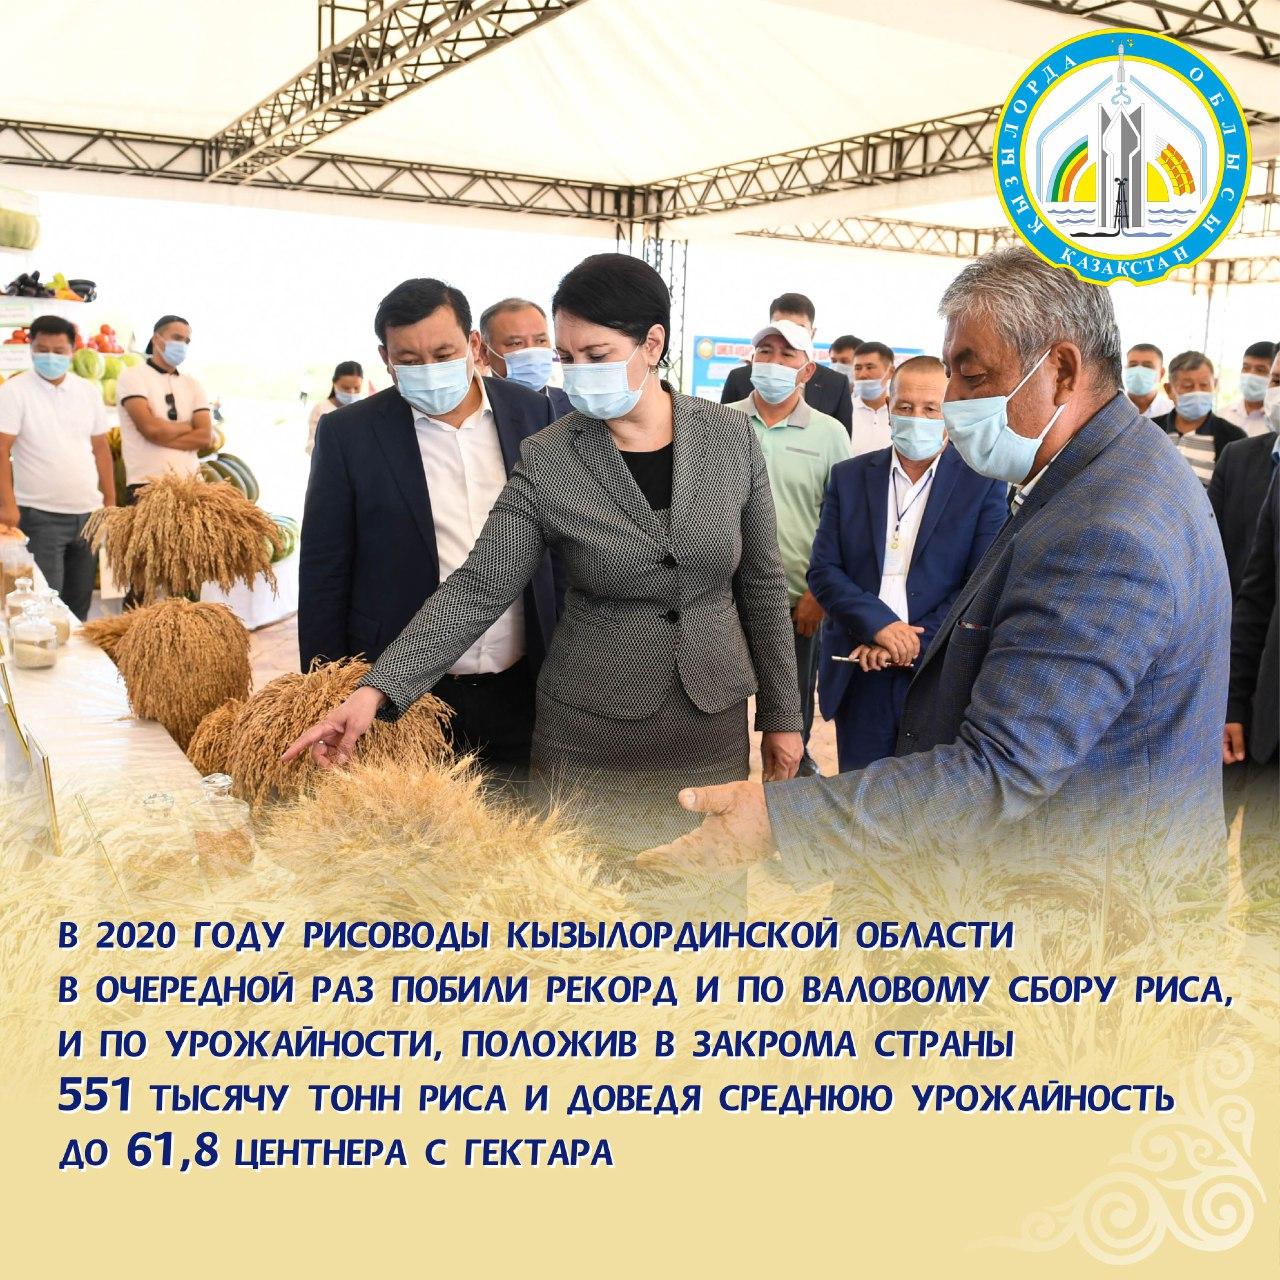 Новый рекорд по урожайности риса получили рисоводы Кызылординской области